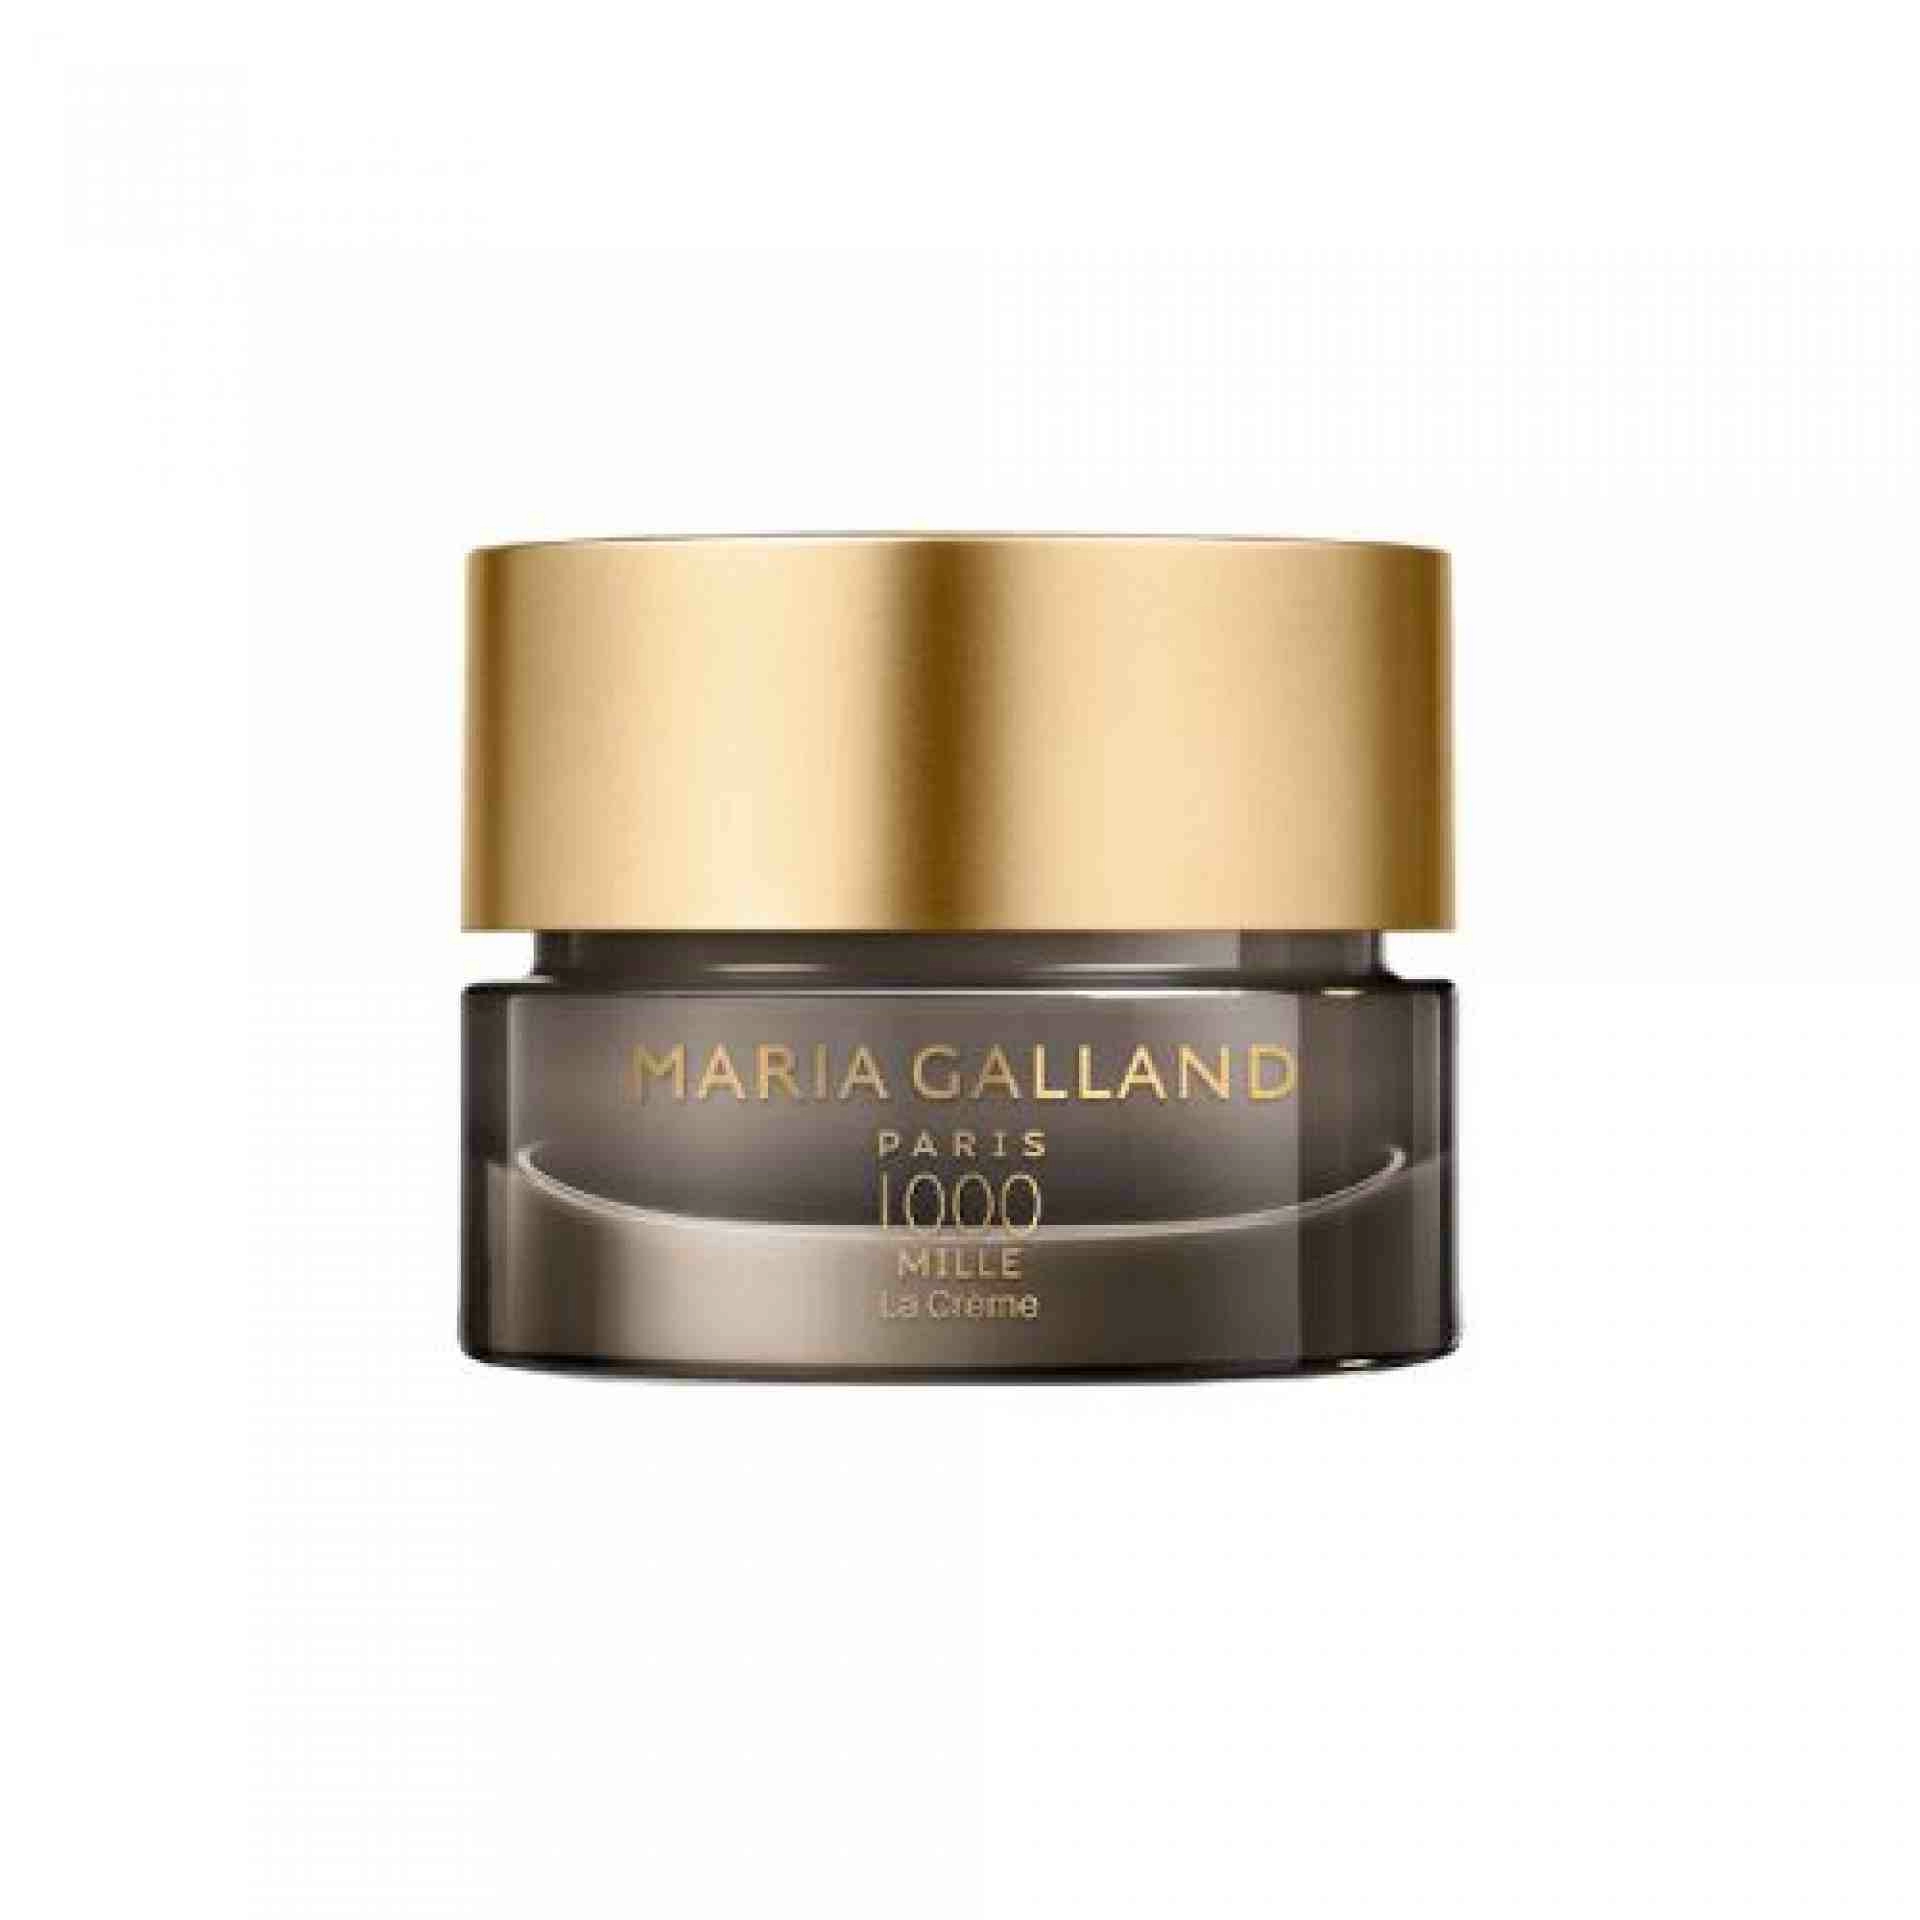 1000 La Crème | Crema antiedad global 50ml - Mille - Maria Galland ®